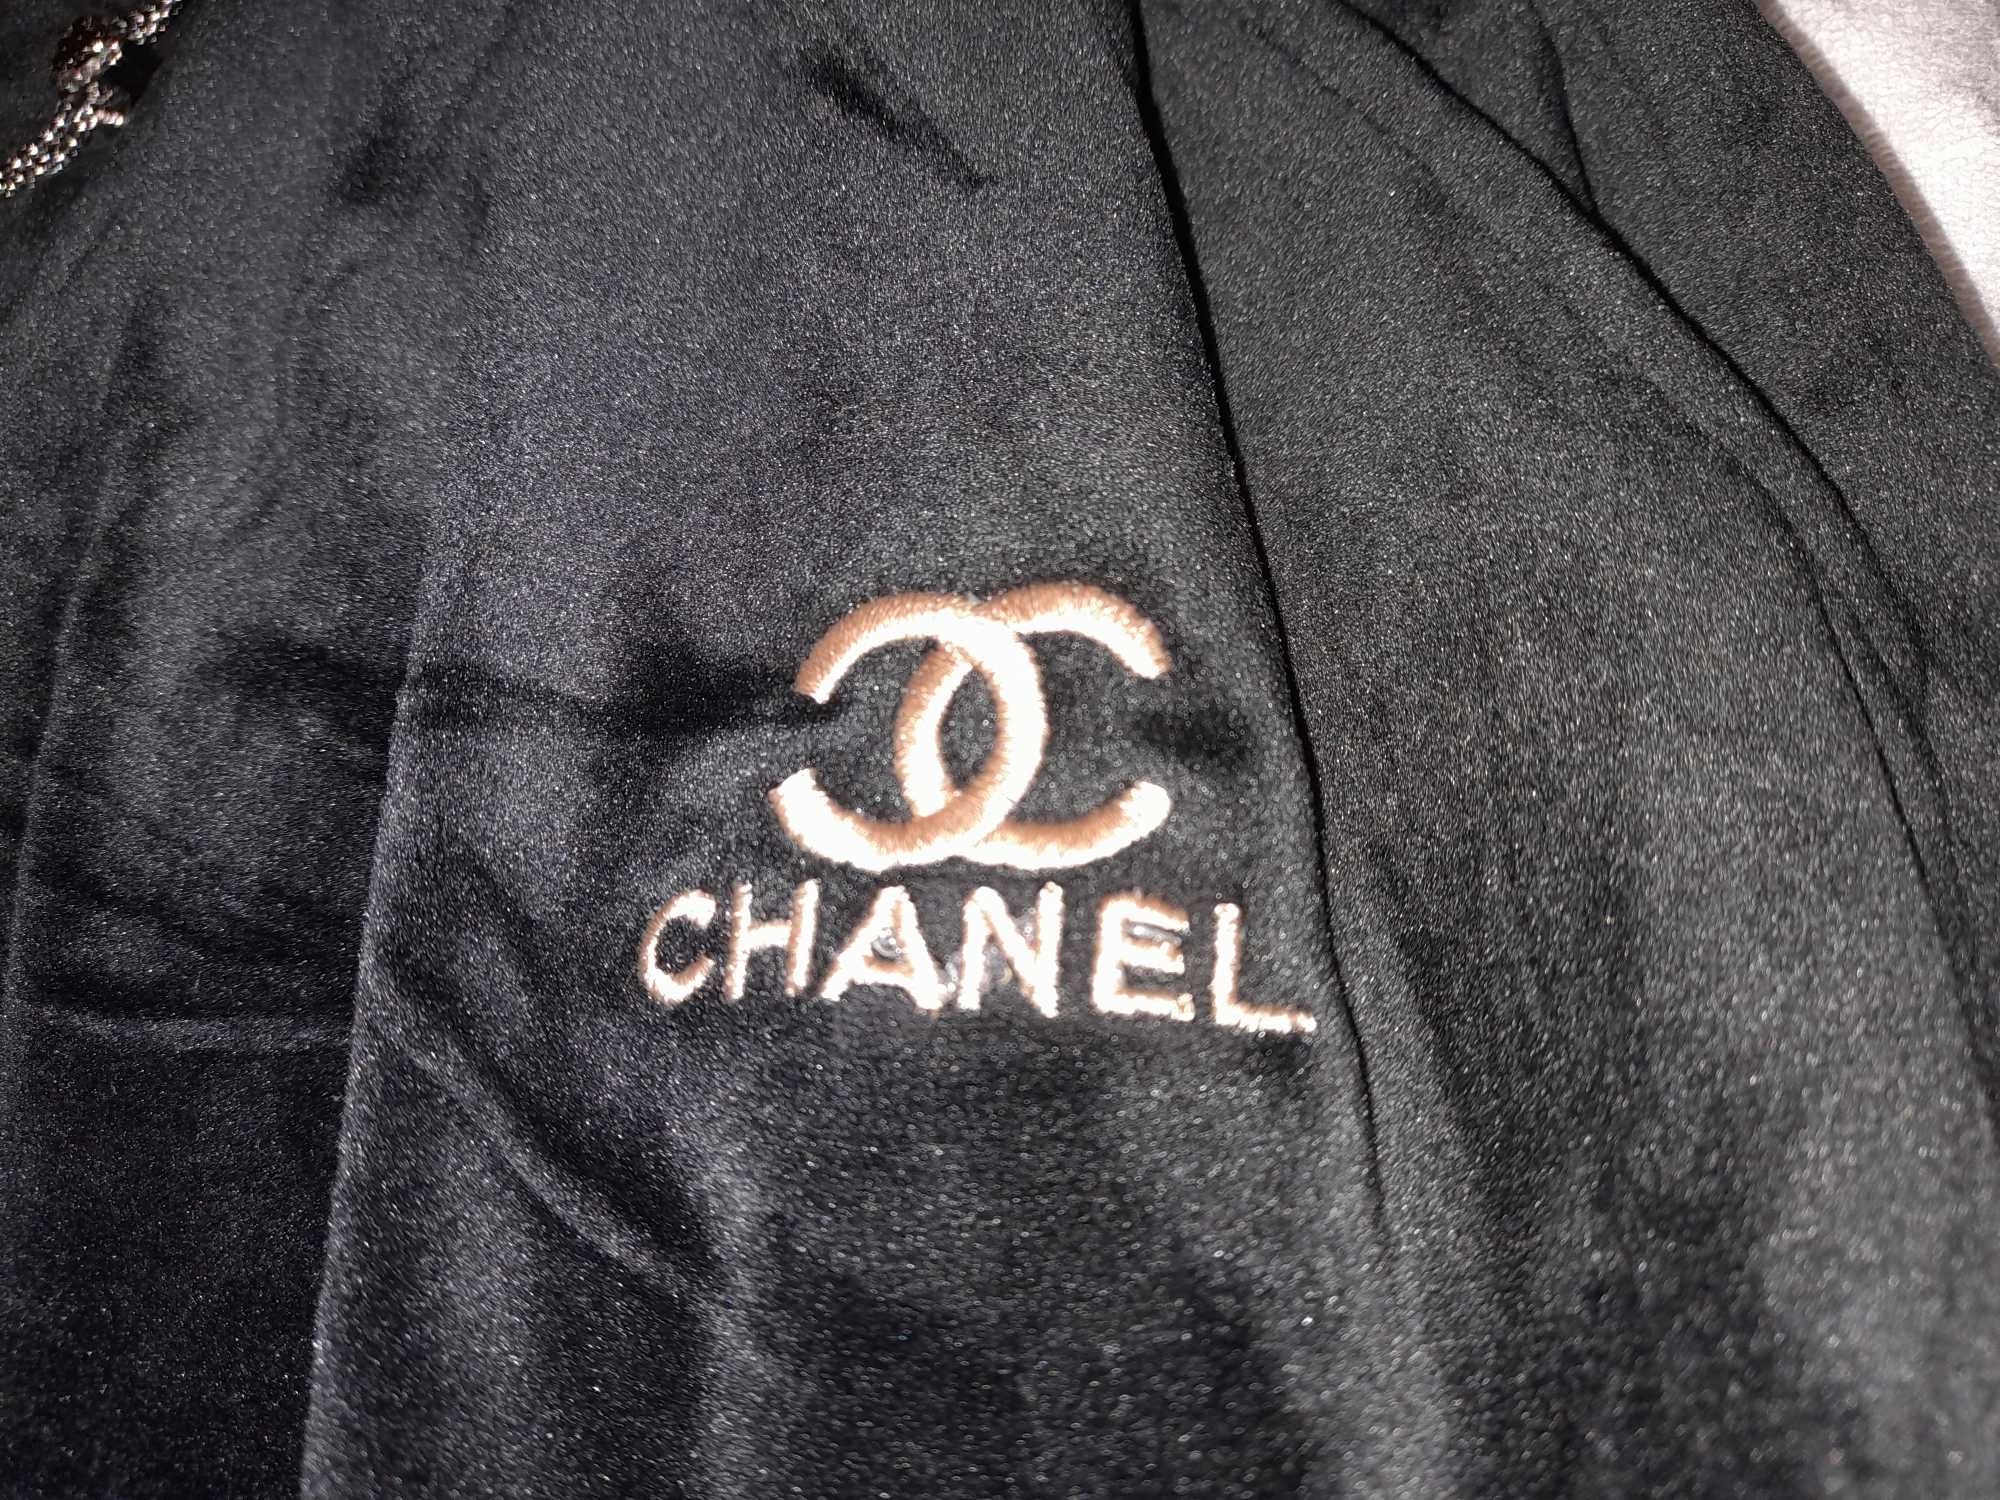 Chanel spodnie dresowe welurowe czarne rozm. M/L nowe